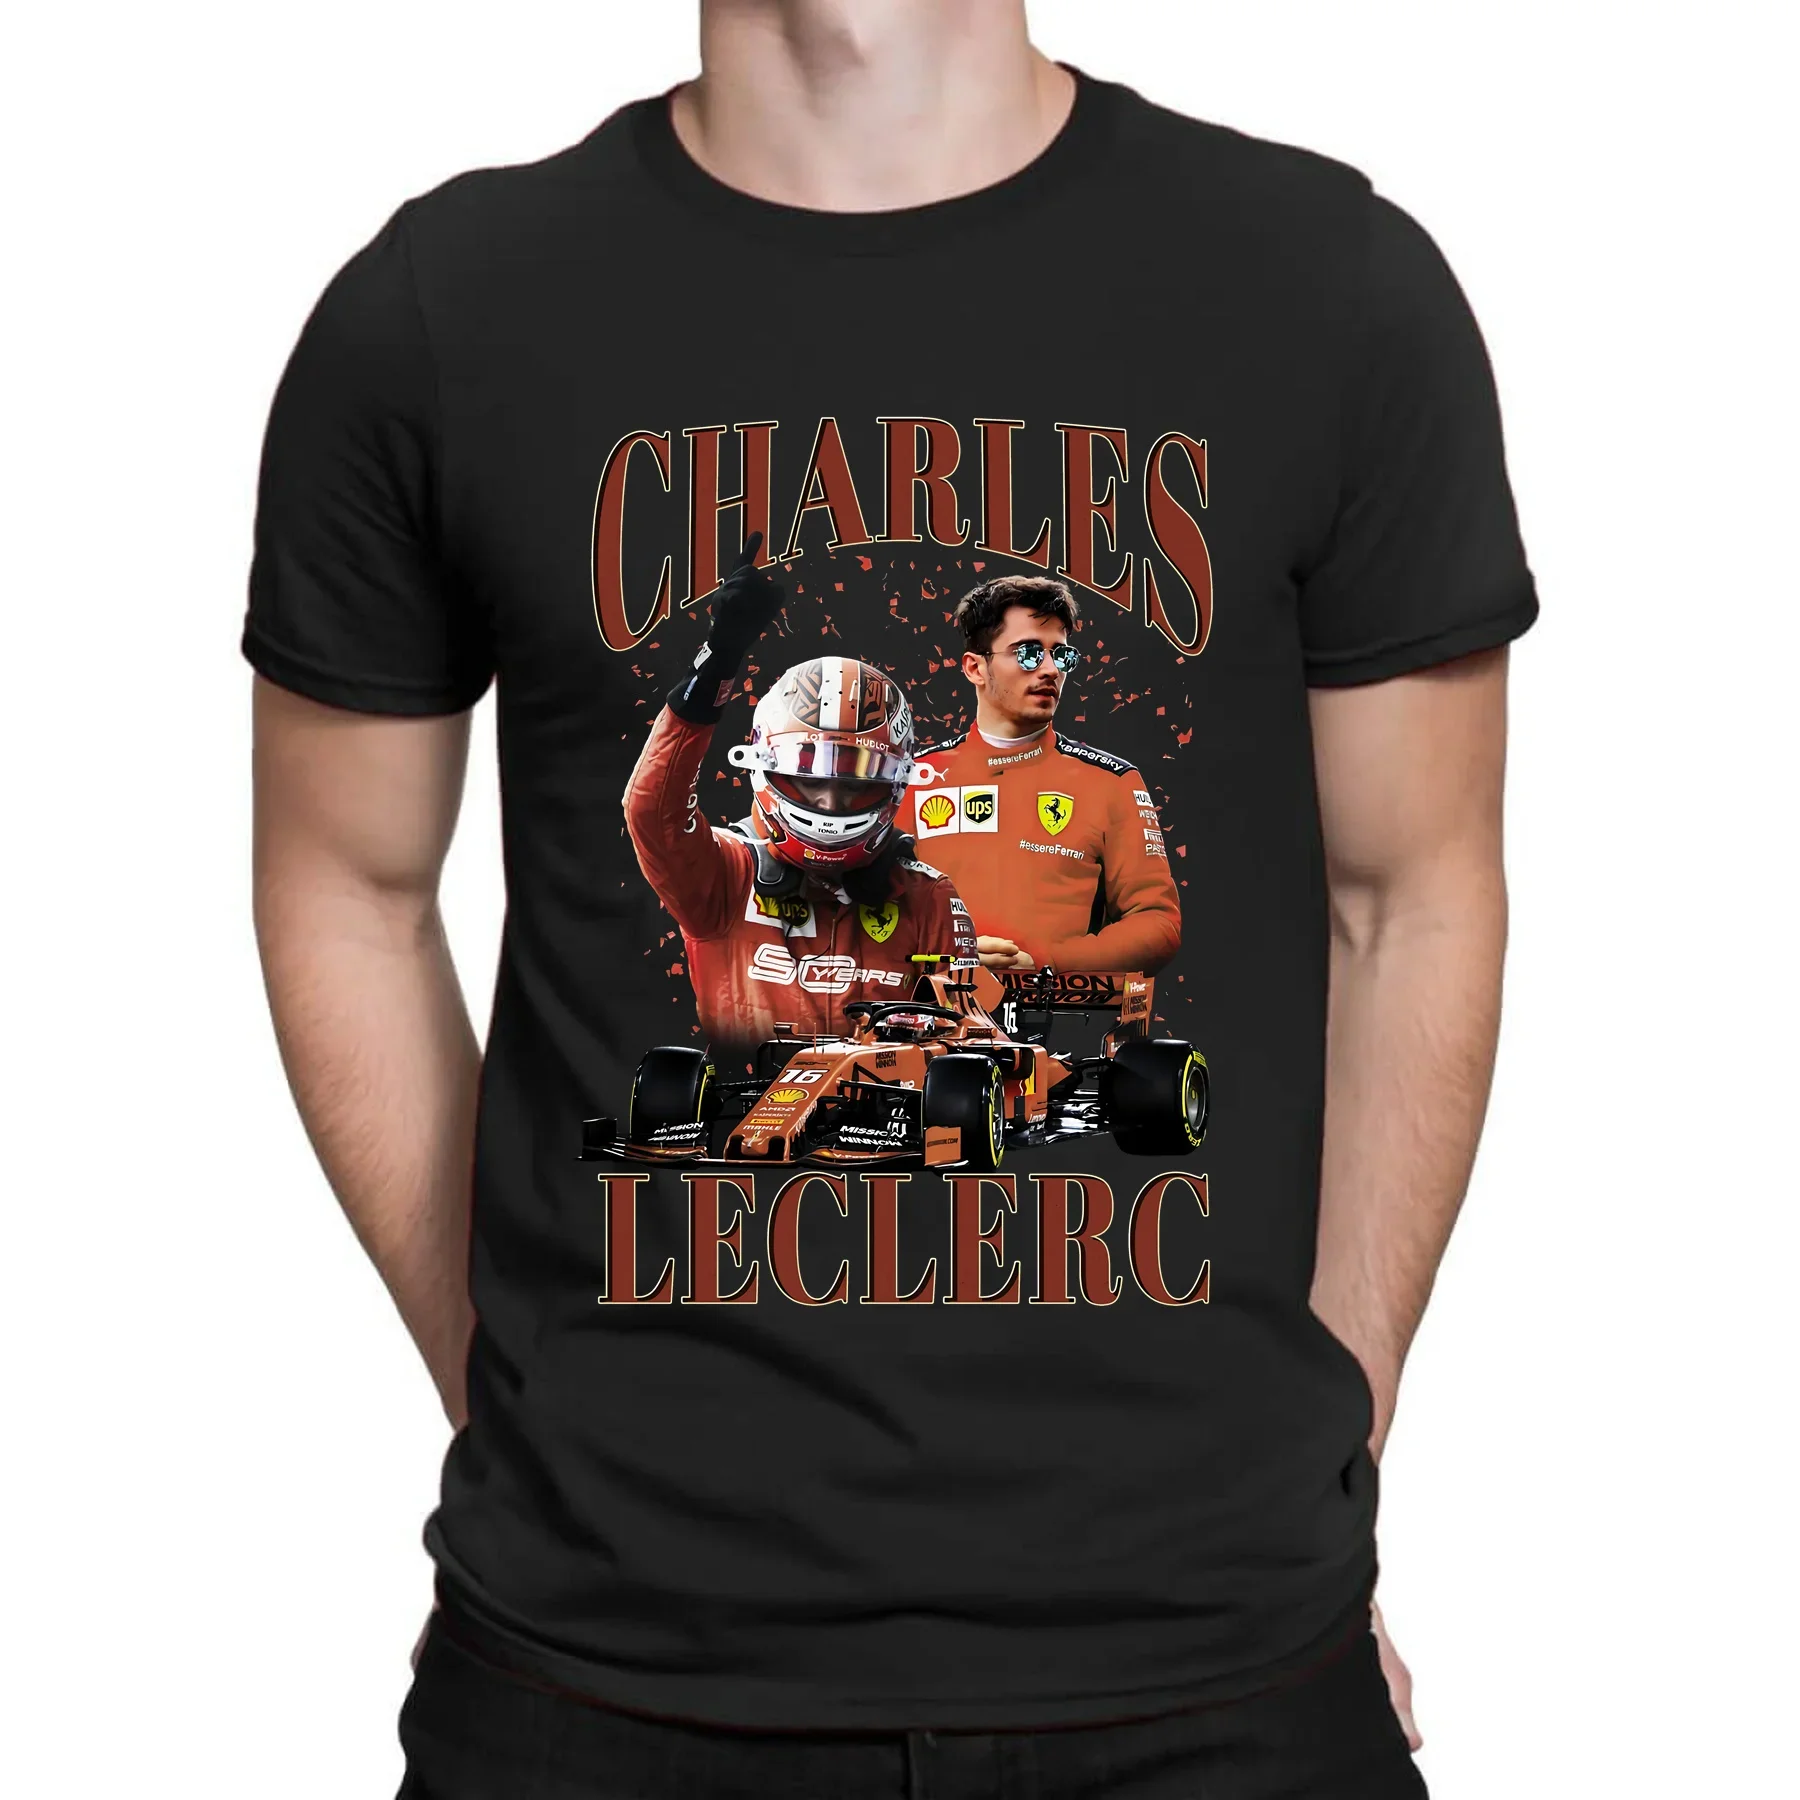 

Удивительная Мужская футболка, Повседневная футболка большого размера, Чарльз помиранская победа, Классическая незаменимая футболка, мужские футболки уличная одежда с графическим принтом